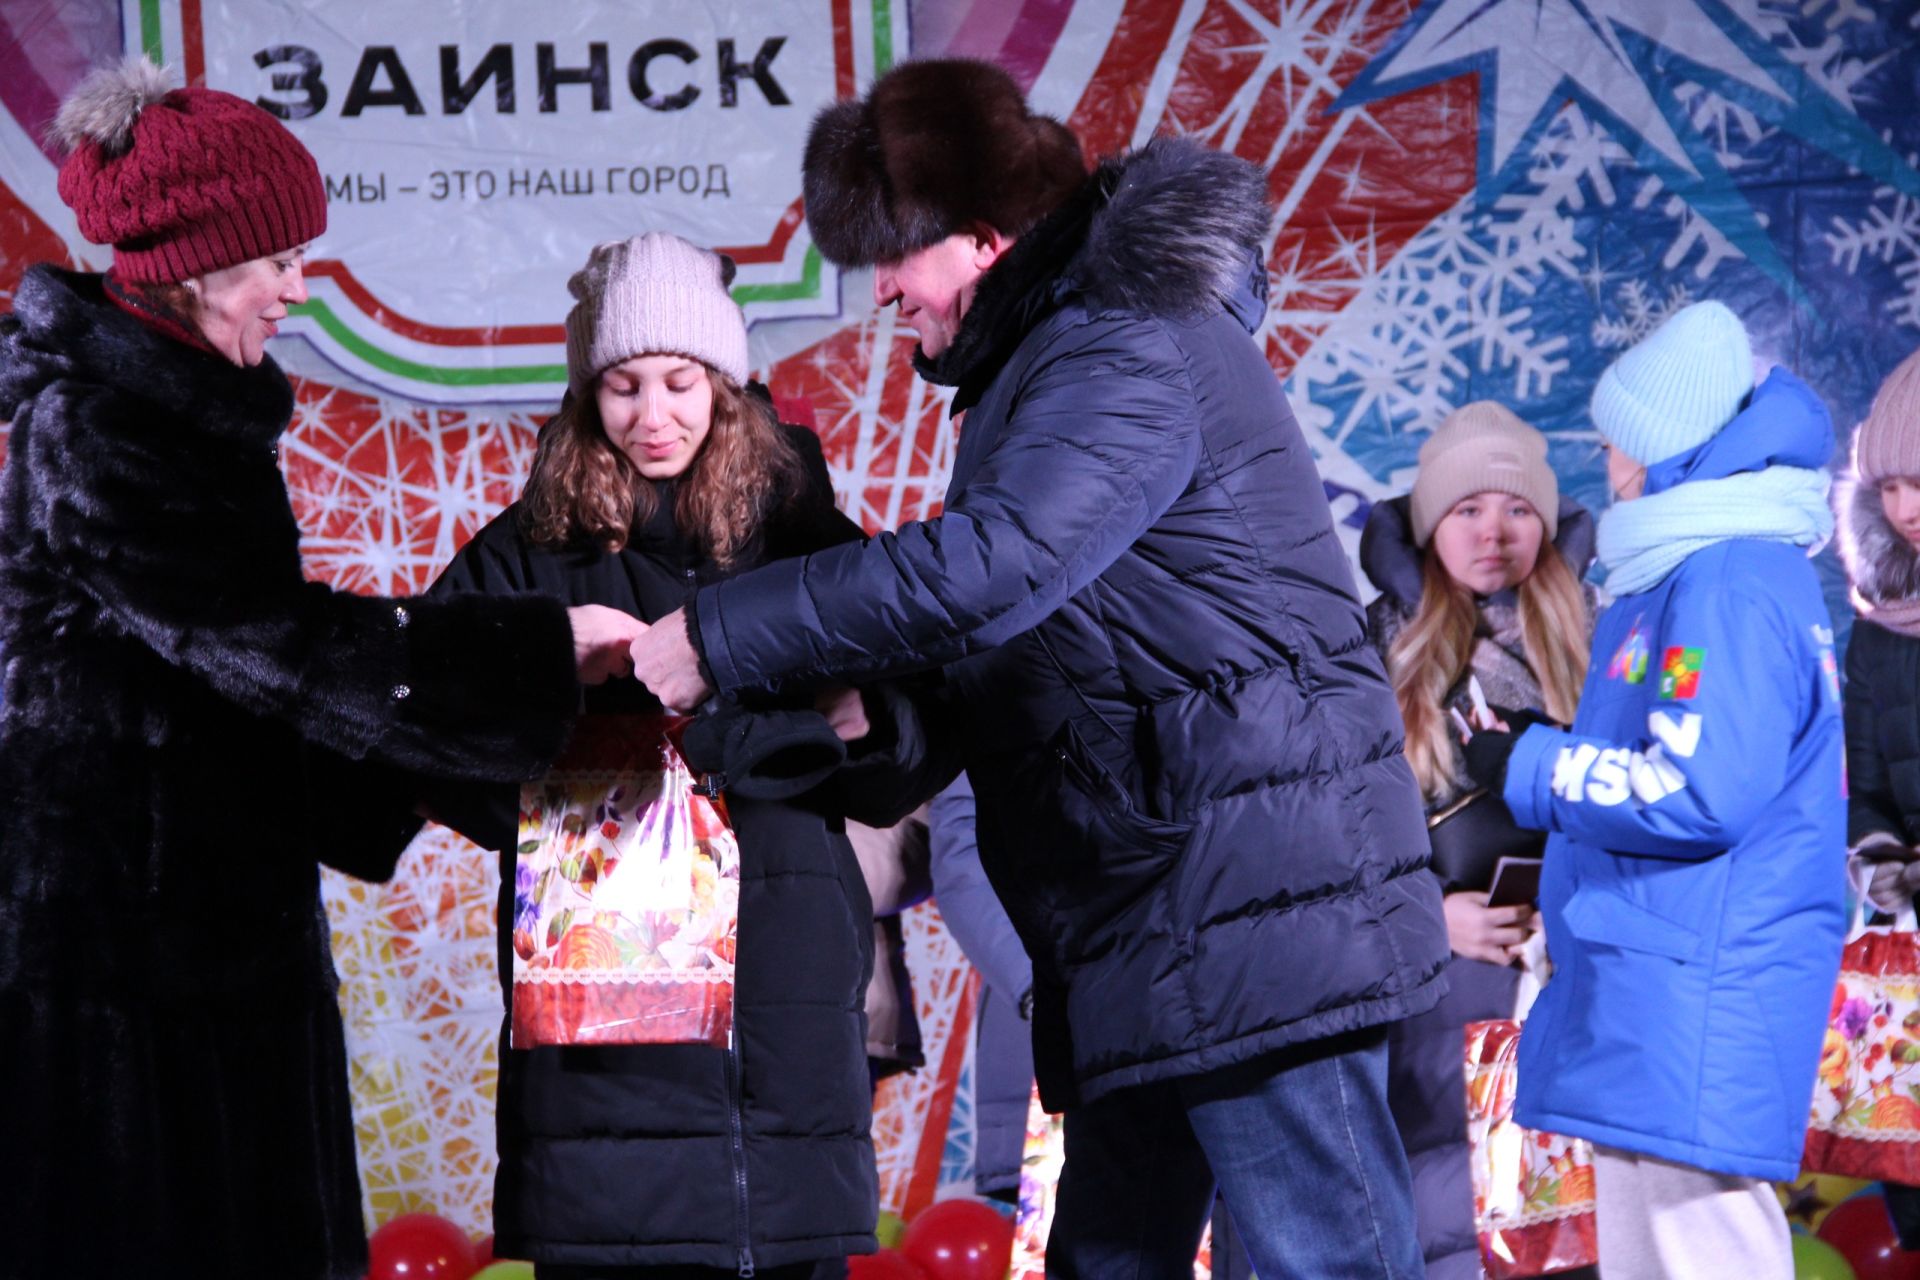 Двенадцати юным заинцам вручили паспорта в День Конституции России